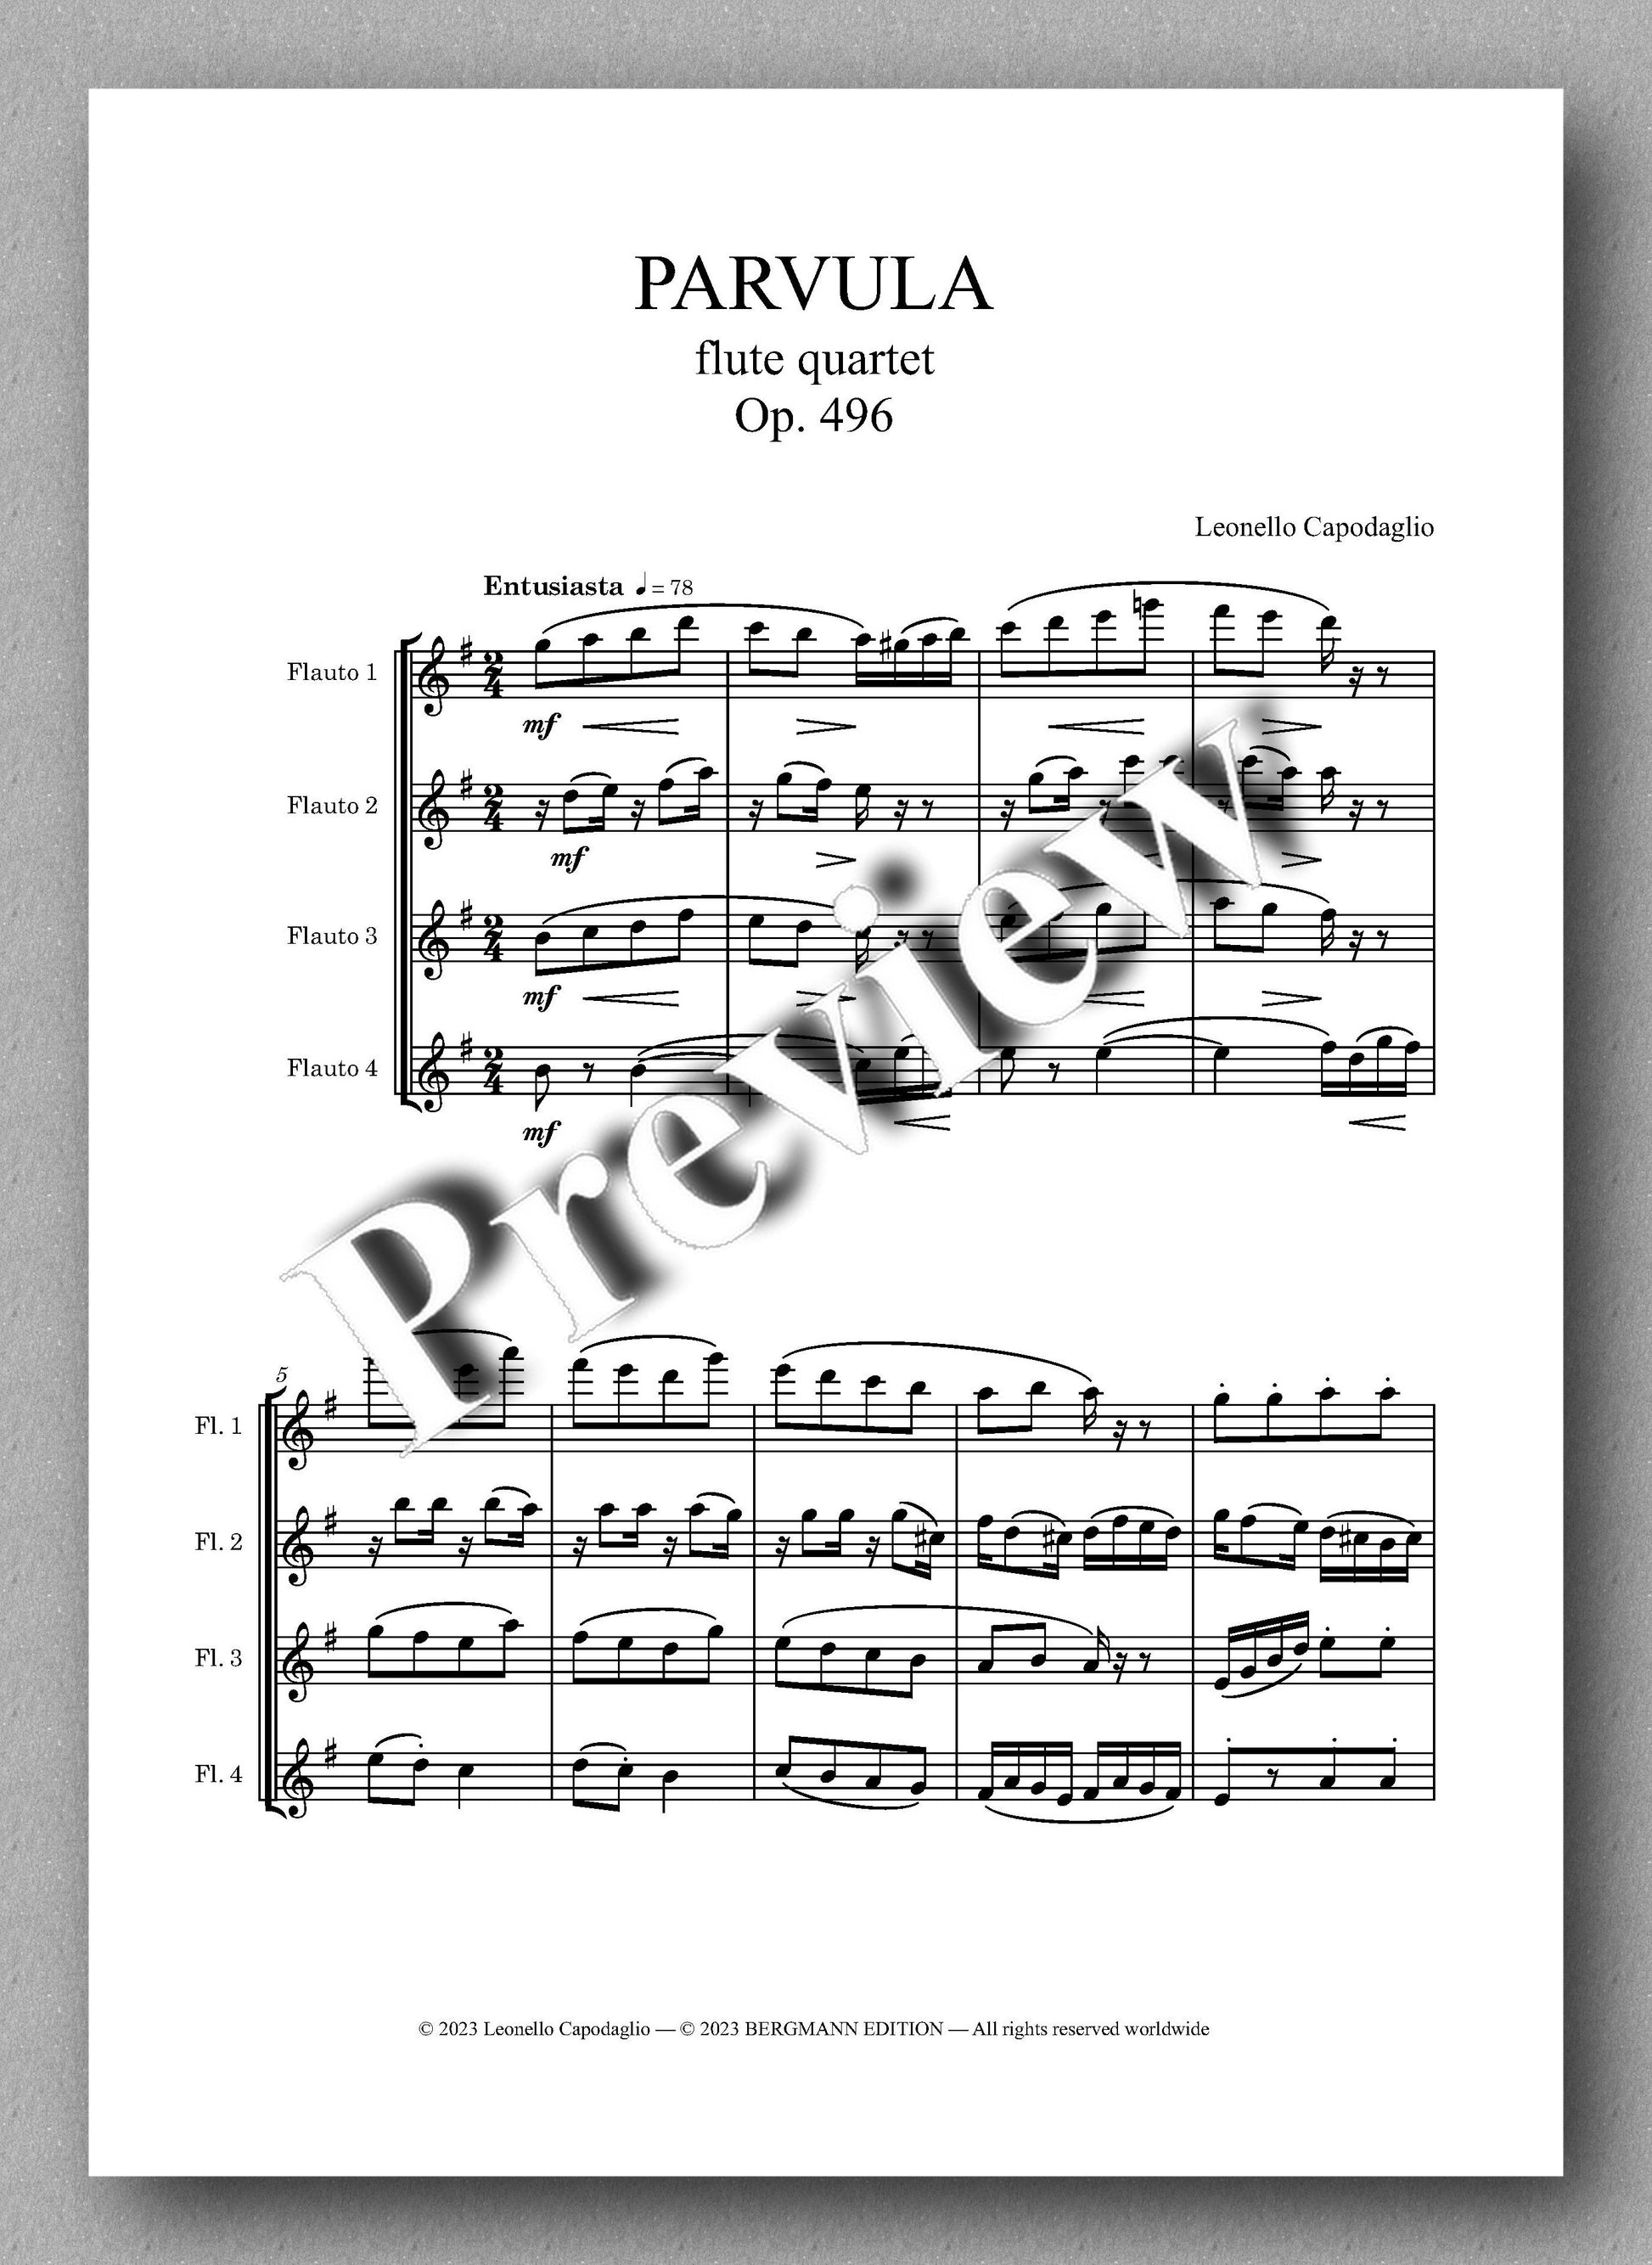 PARVULA, Op. 496 by  Leonello Capodaglio - preview of the music score 1